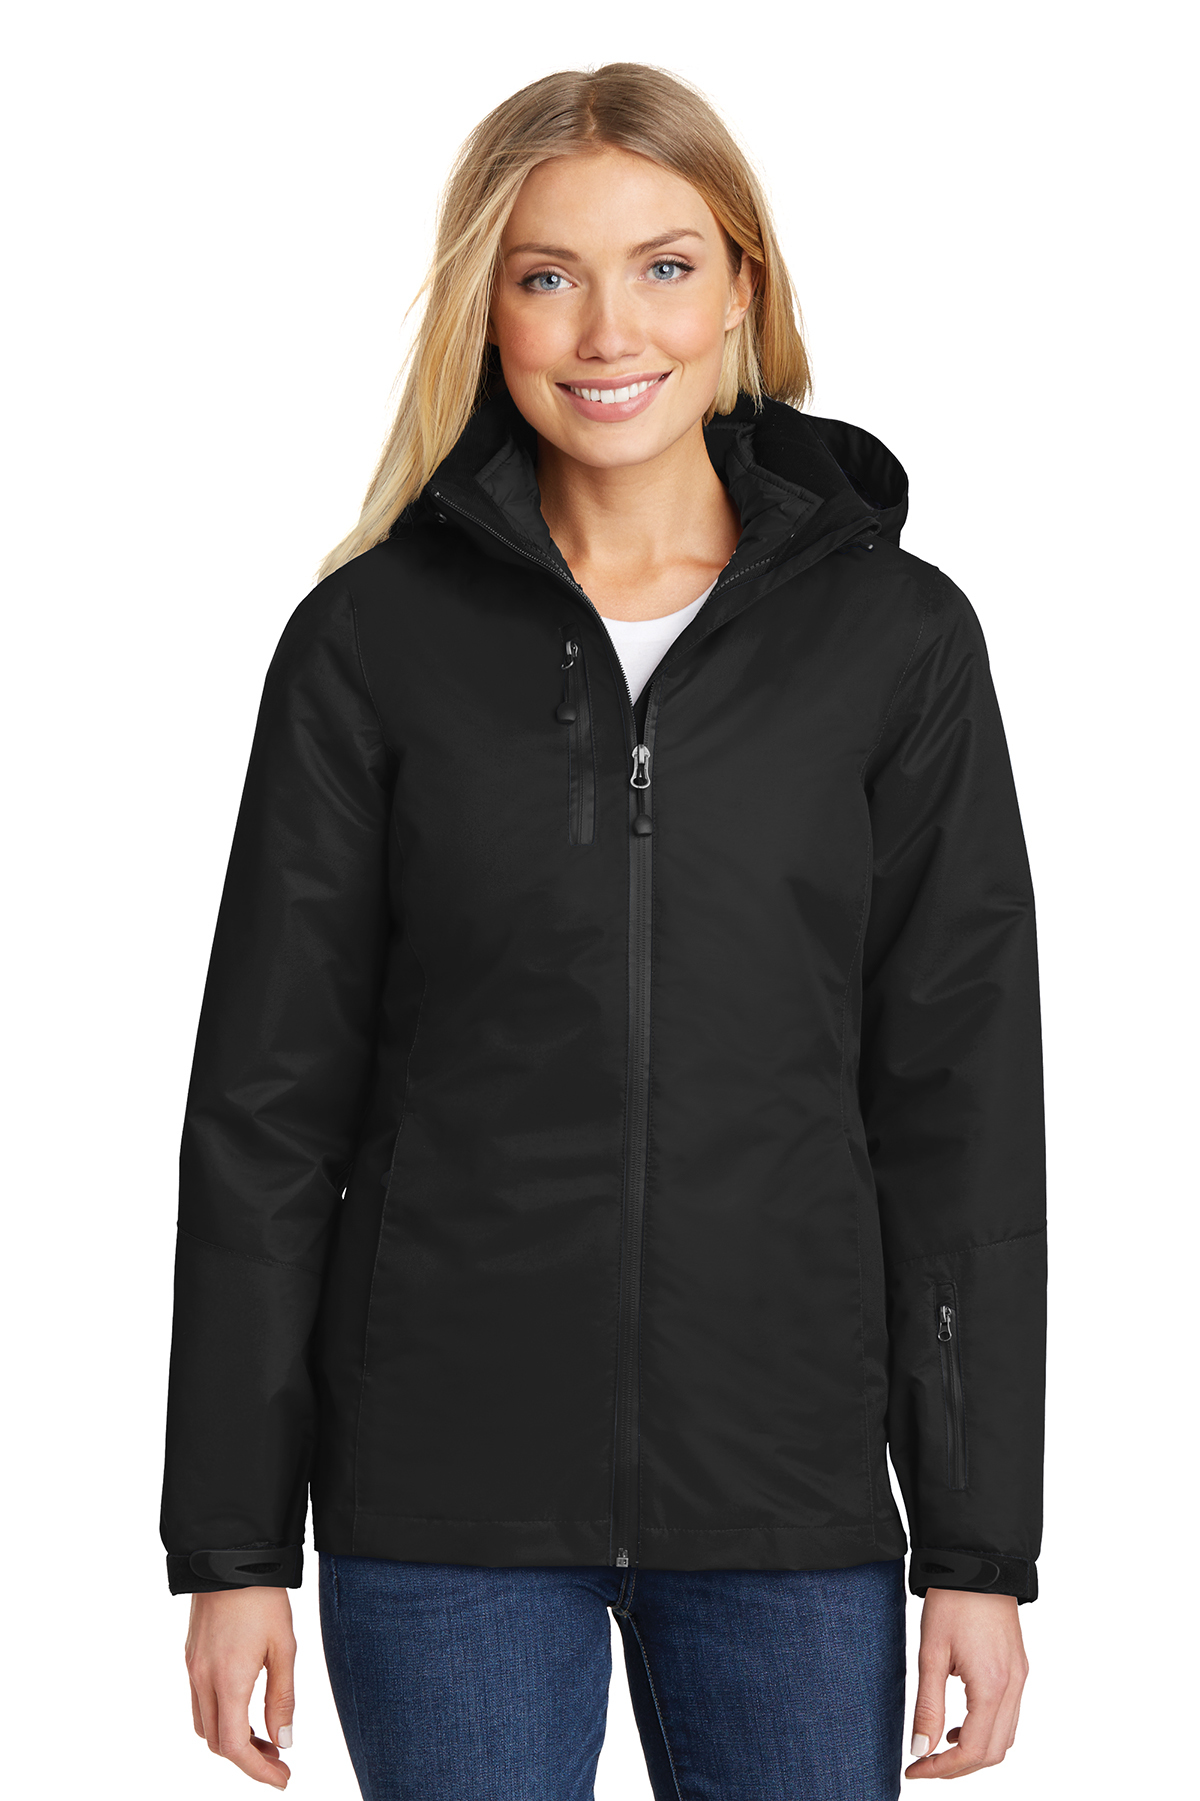 Port Authority Ladies Vortex Waterproof 3-in-1 Jacket | Product | Port ...